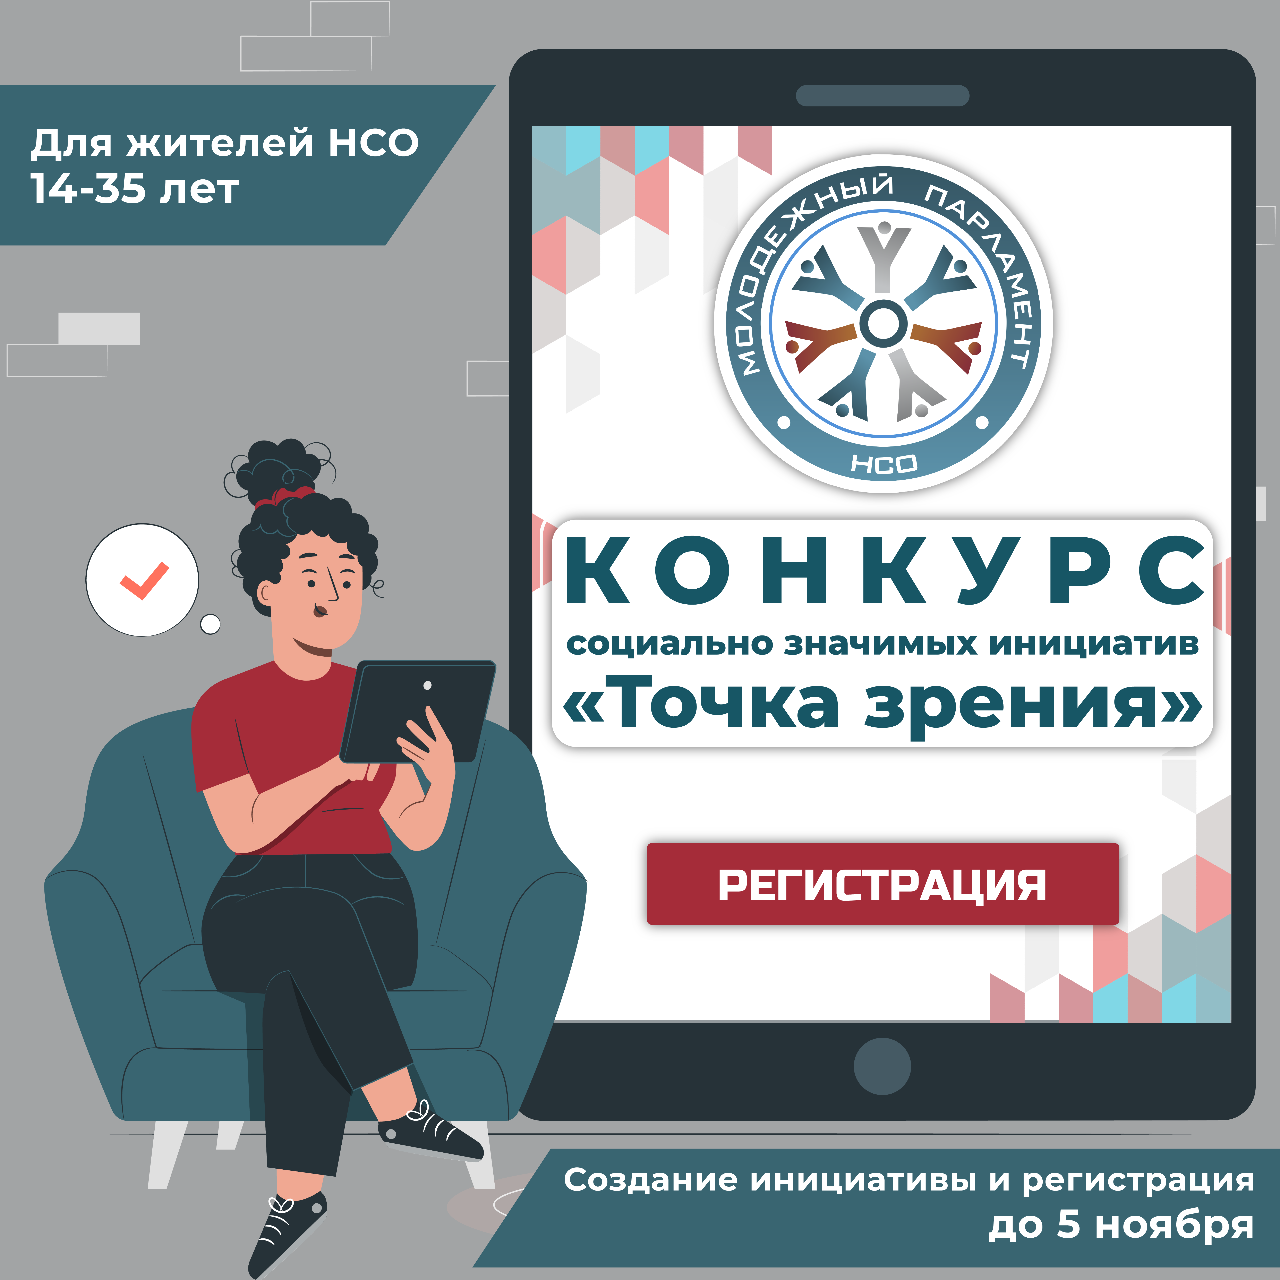 ФОТО к новости: Молодёжный парламент Новосибирской области запустил Конкурс социально-значимых инициатив «Точка зрения».